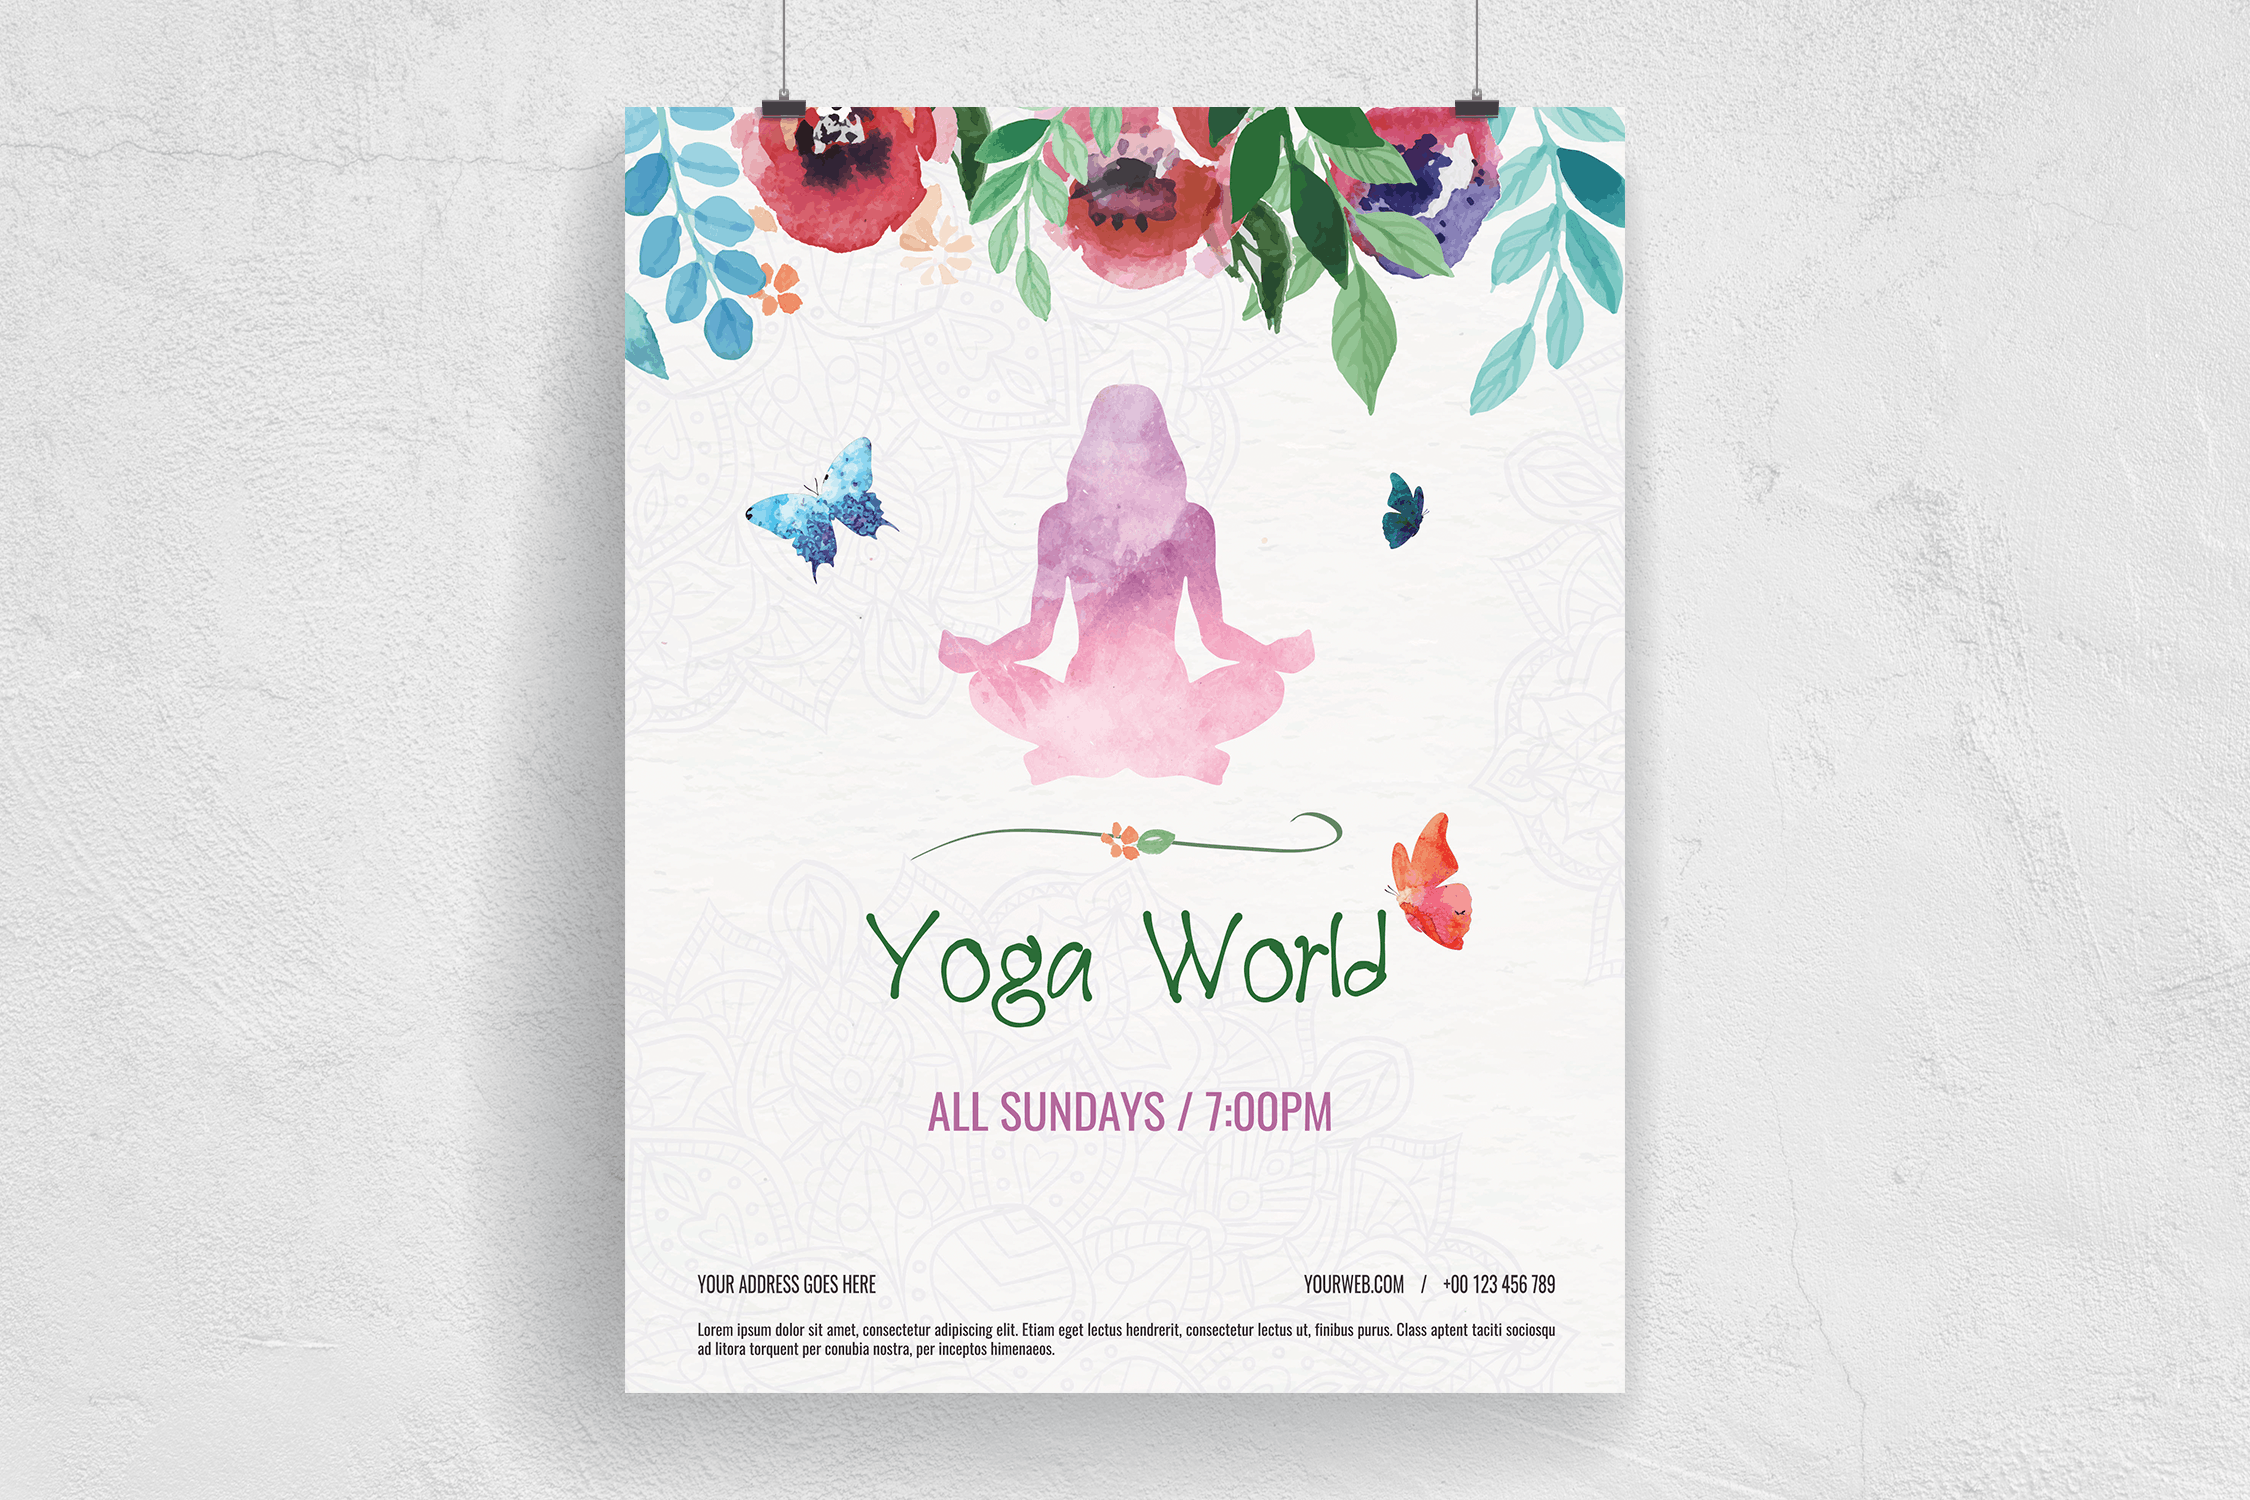 多彩水彩手绘设计风格瑜伽主题活动海报传单模板 Colorful Hand Painted Yoga World Flyer插图